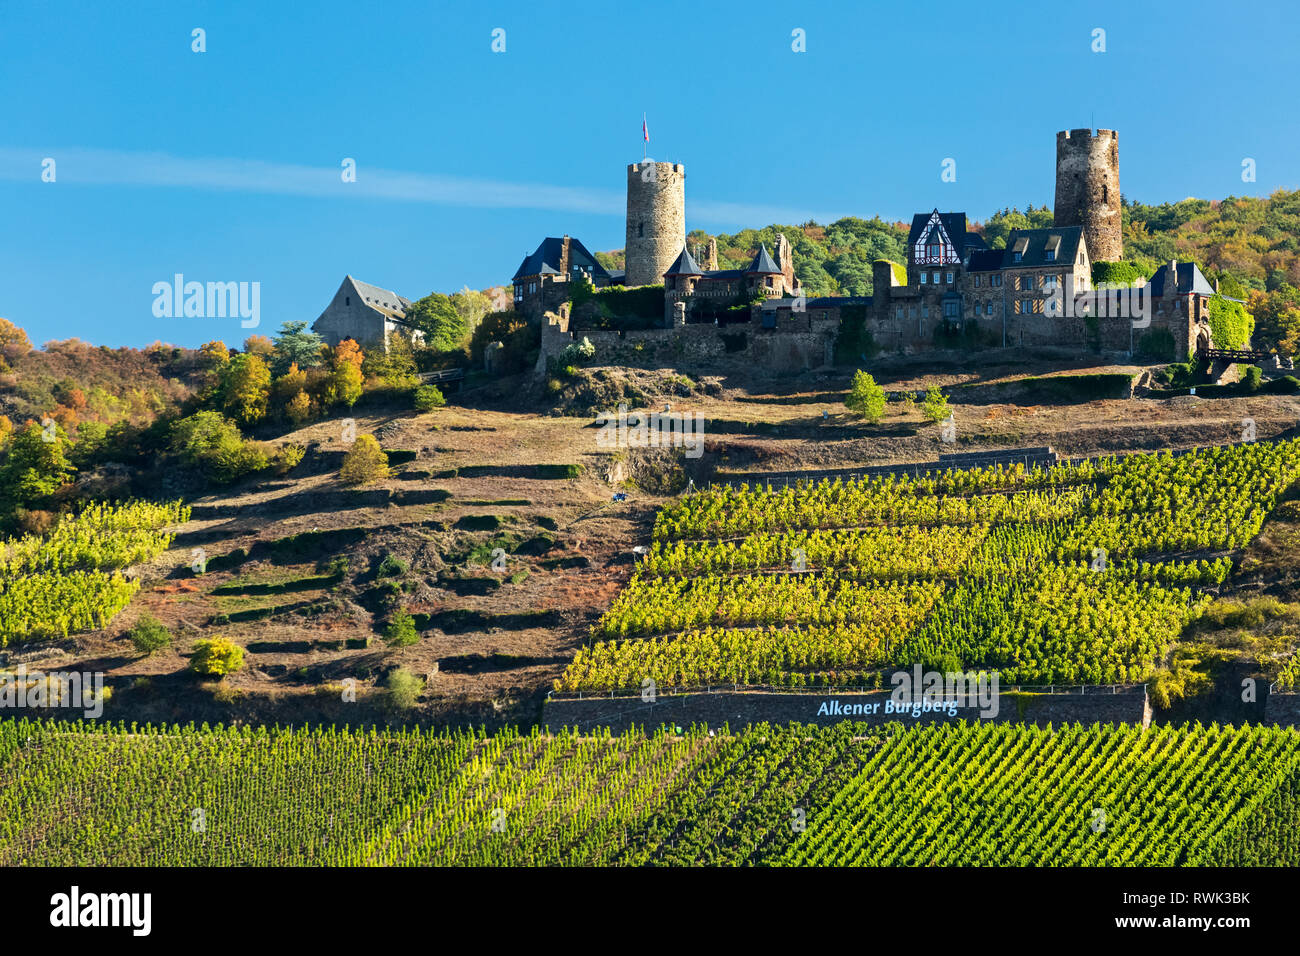 Antiguo castillo de piedra en la cima de una colina con hileras de viñedos a lo largo de pendientes empinadas con cielo azul; Alken, Alemania Foto de stock